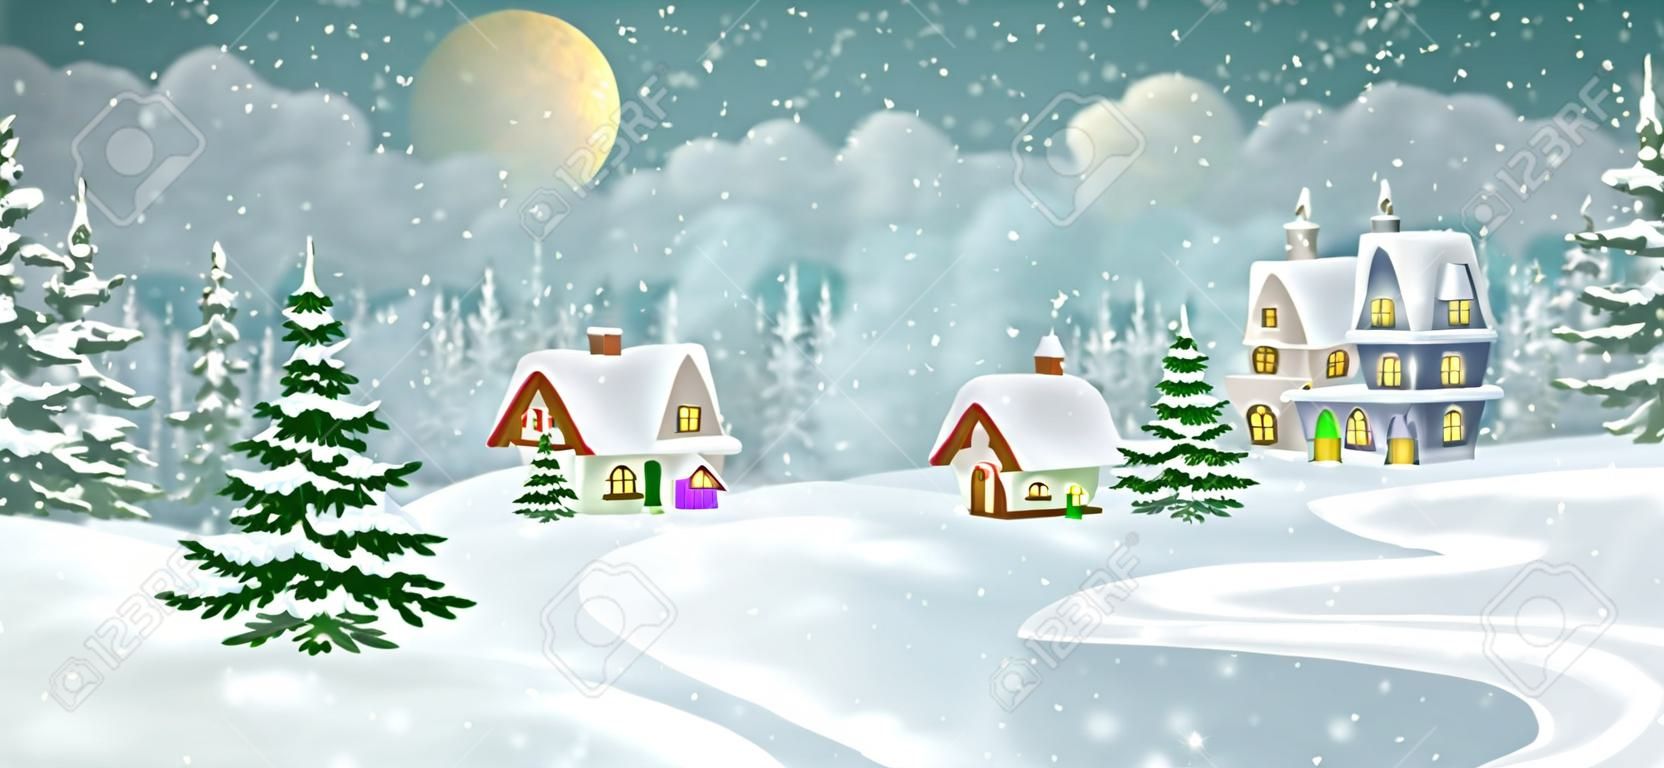 Zimowy krajobraz wsi z sosnowym lasem. Małe bajkowe domki pokryte śniegiem.